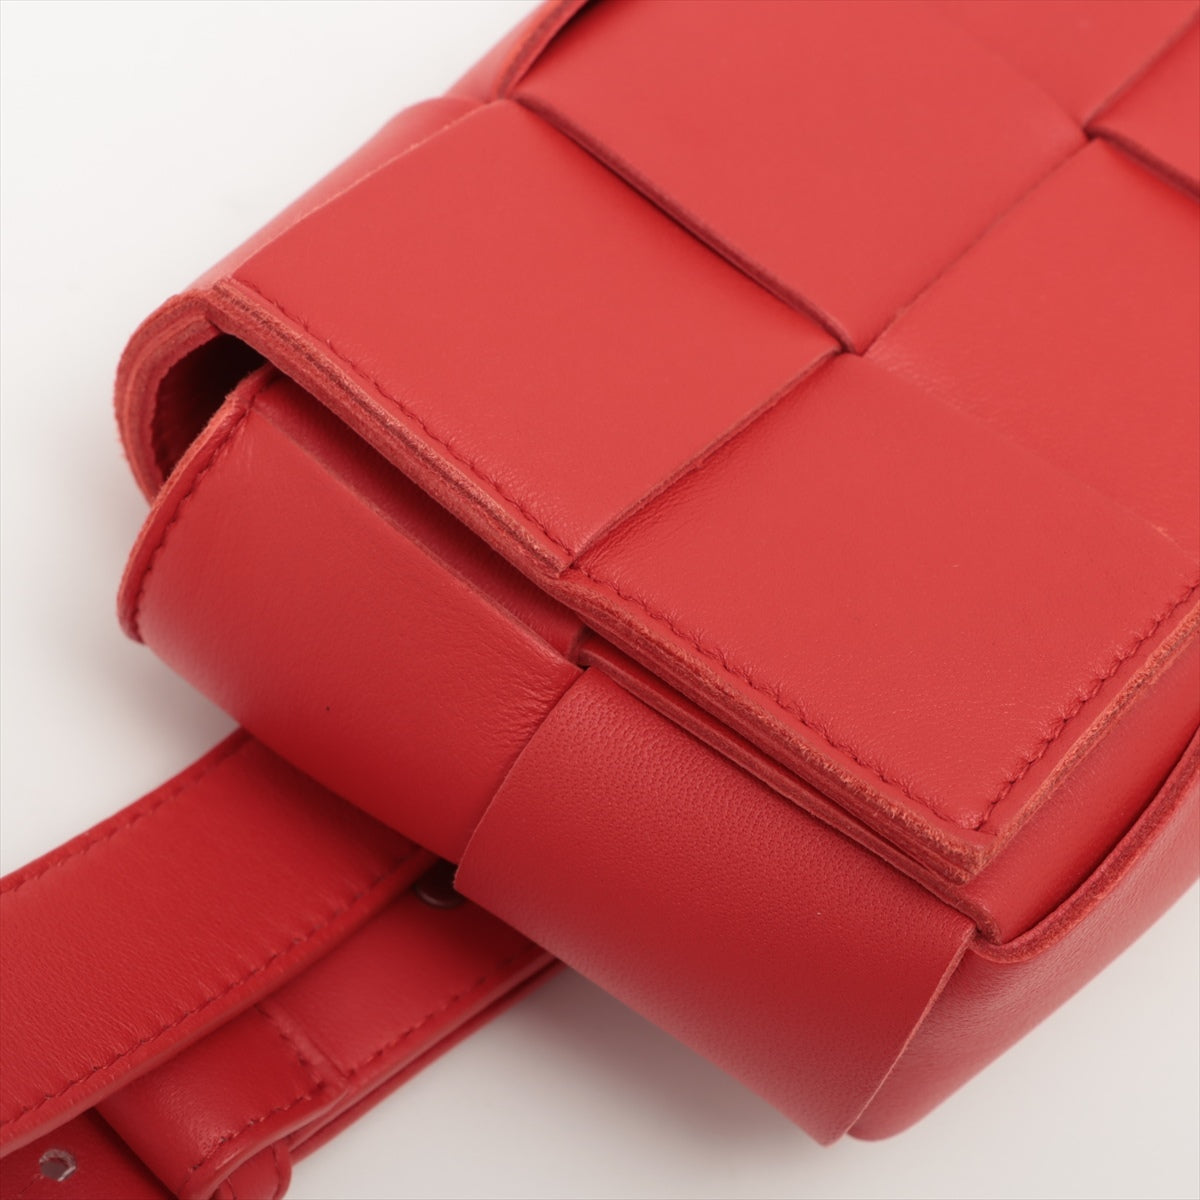 BOTTEGA VENETA Intrecciato Shoulder Bag in Leather Red